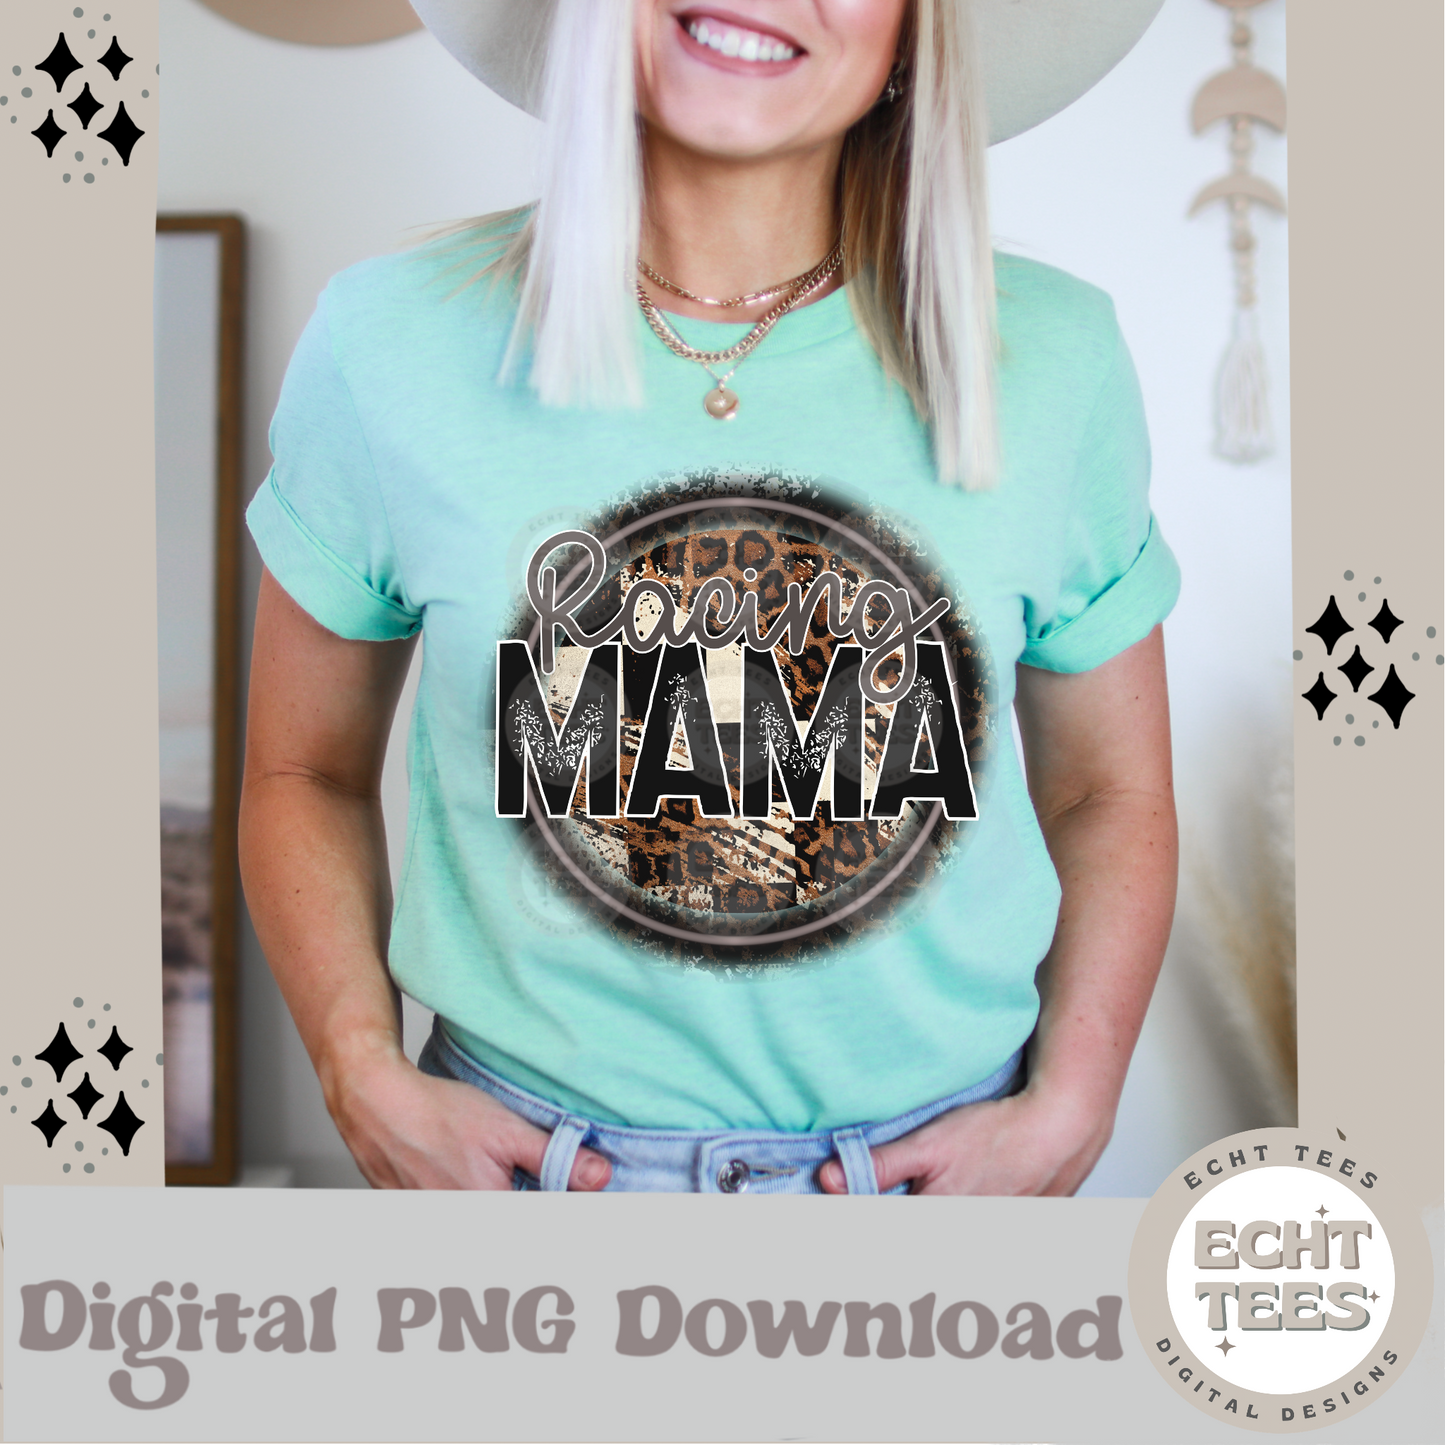 Racing Mama PNG Digital Download